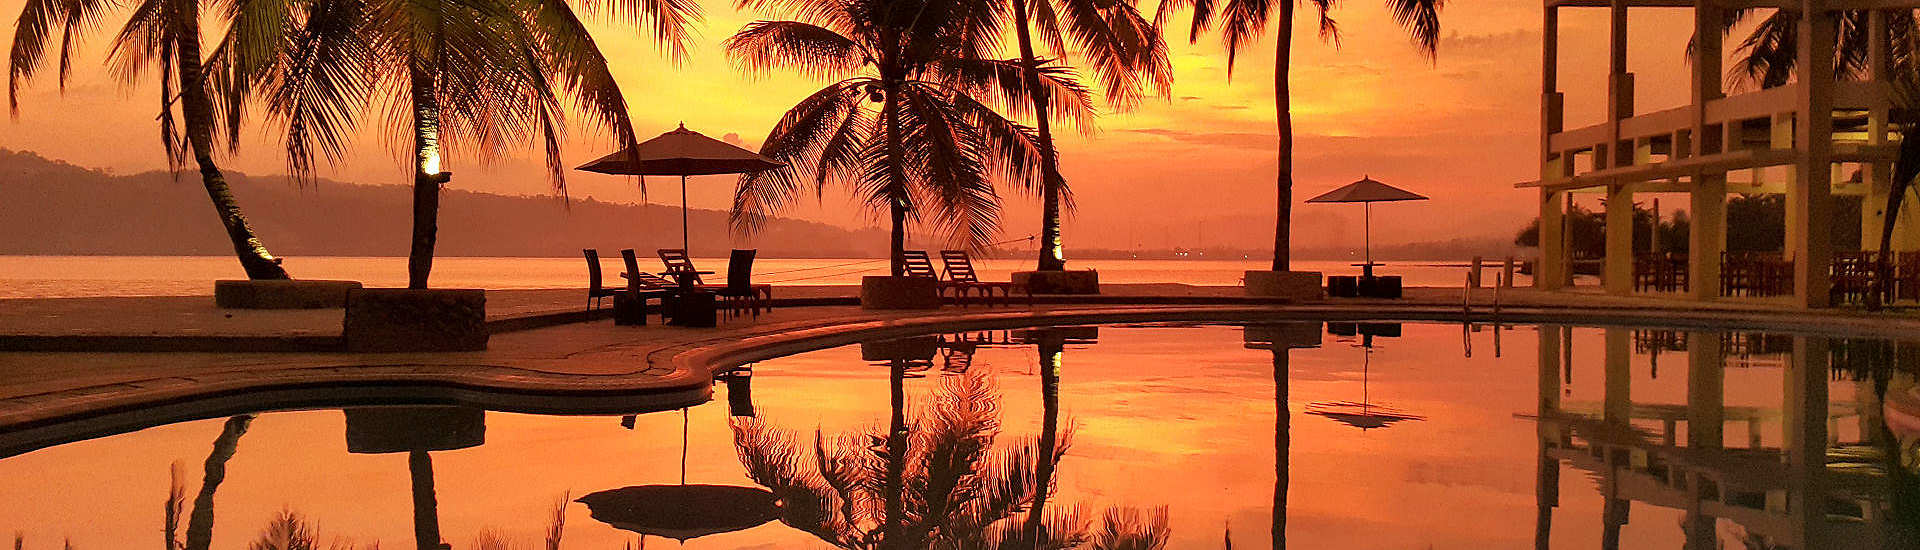 Sonnenuntergang auf den Molukken, Indonesien 